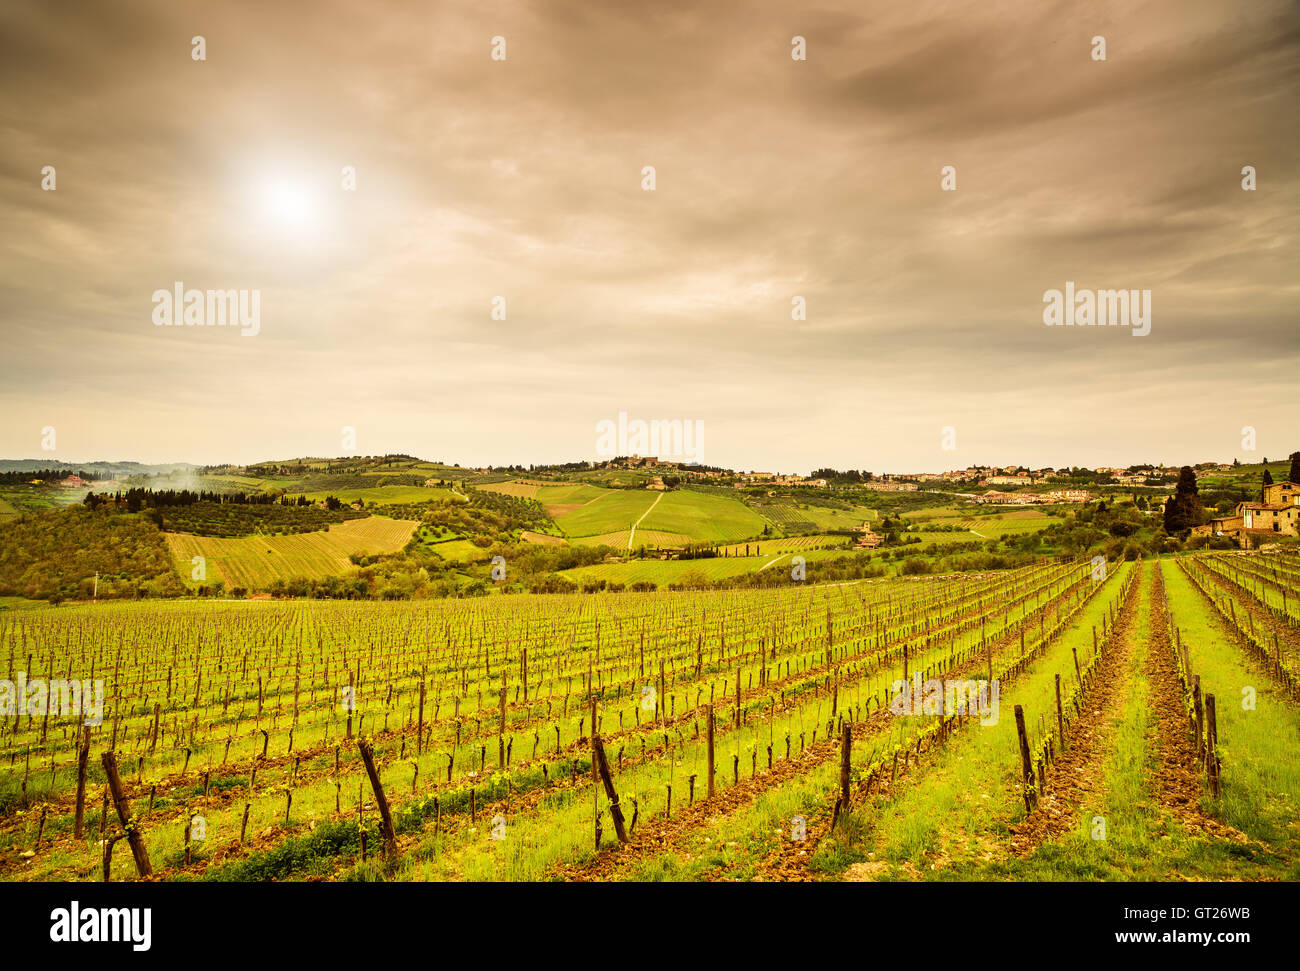 Chianti region, Panzano vineyard, trees and farm on sunset. Tuscany, Italy, Europe. Stock Photo